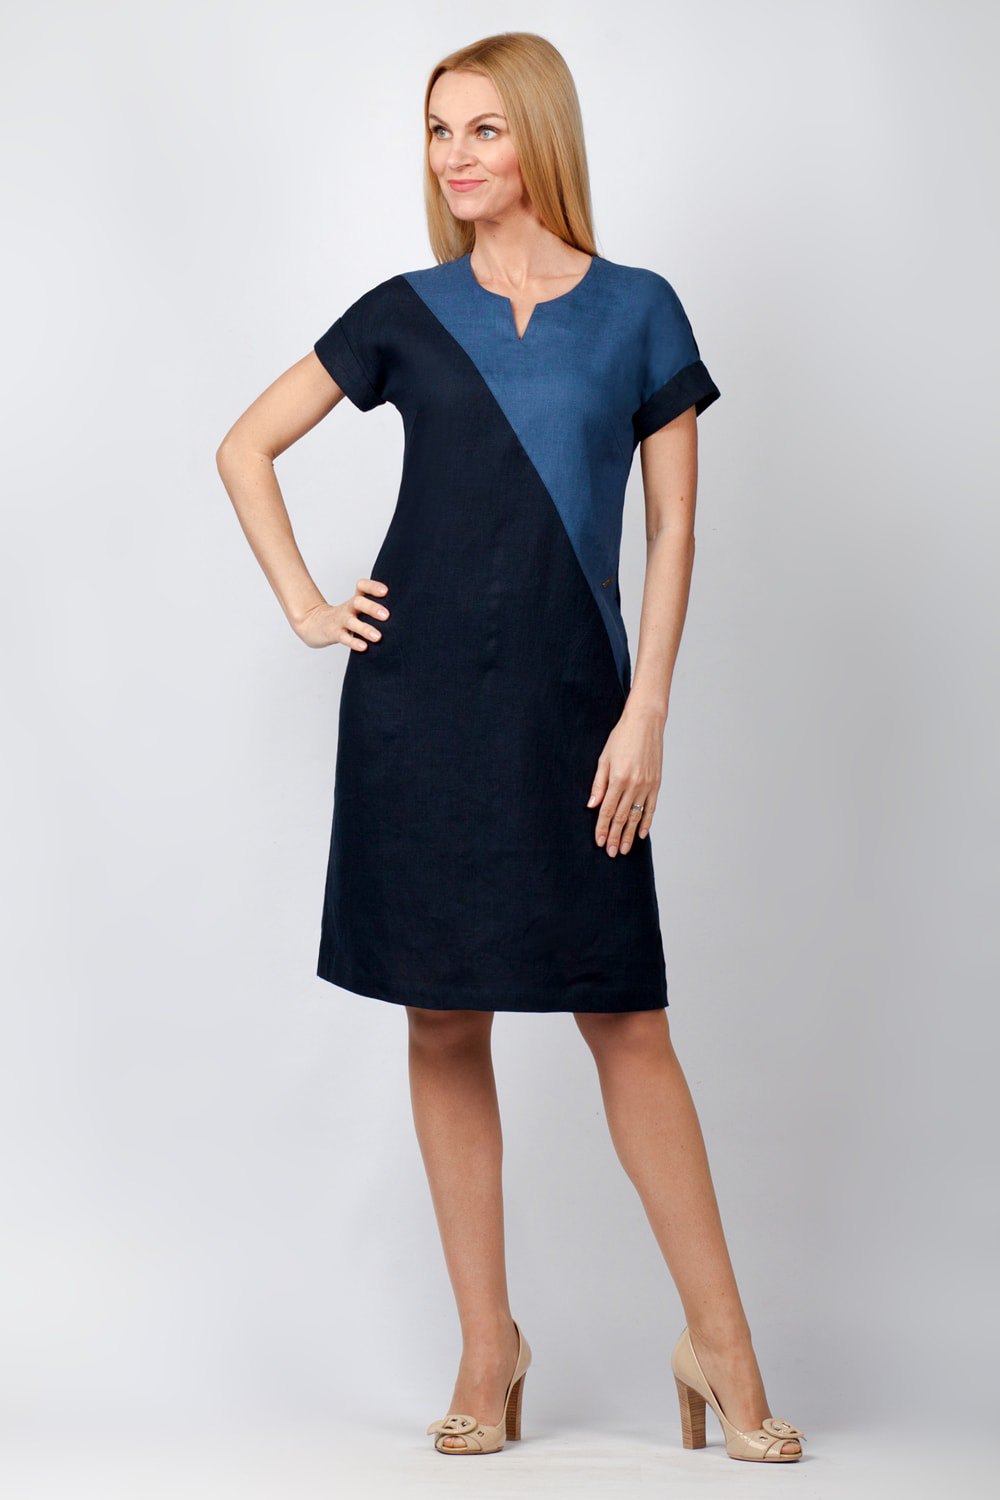 Платье женское "Диагональ" модель 442/1 темно-синий+джинс